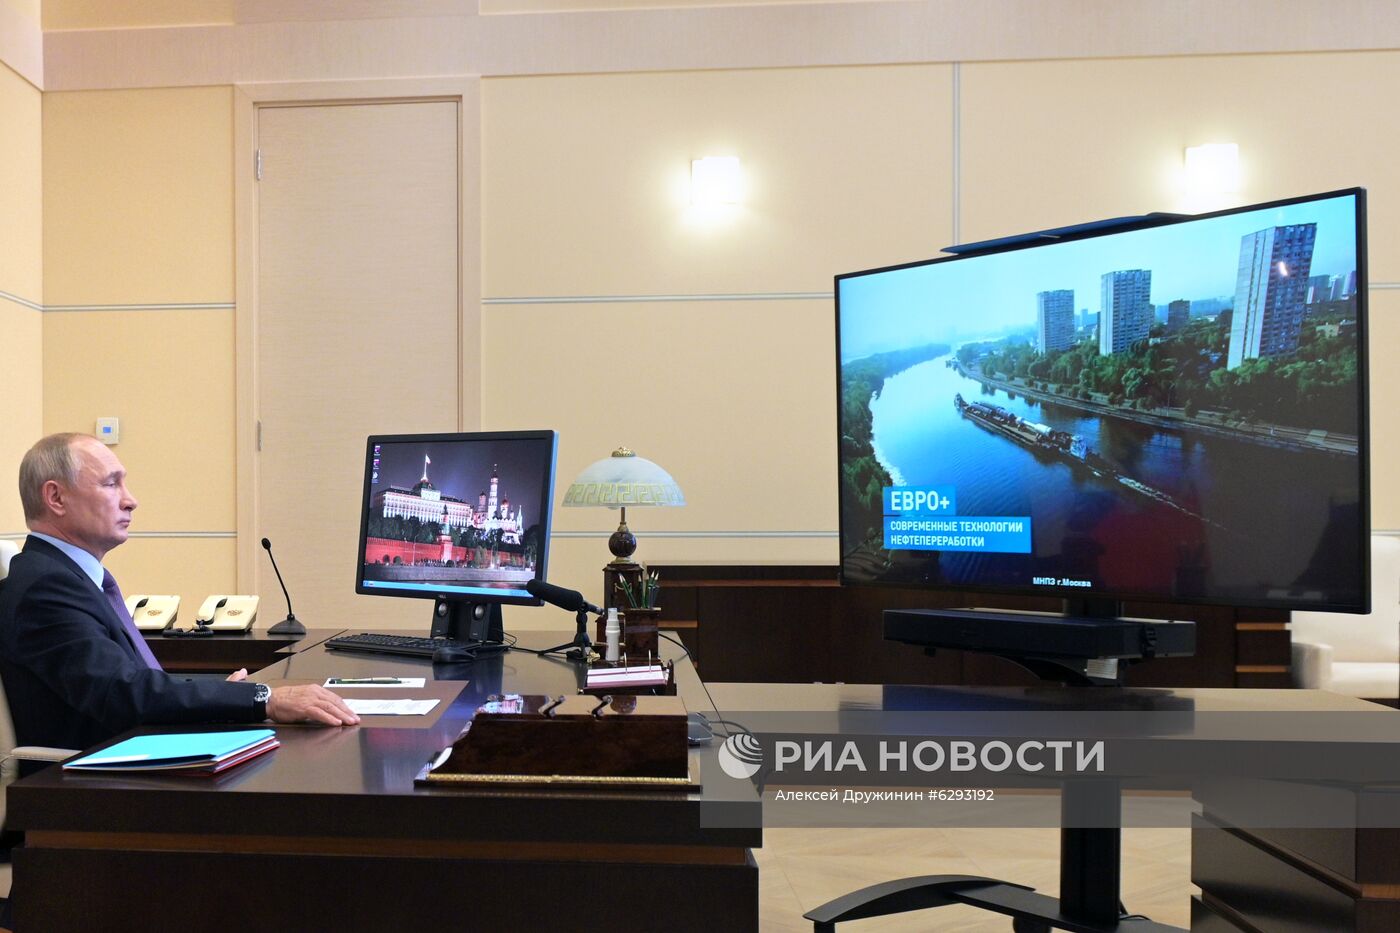 Президент РФ В. Путин дал старт работе комплекса переработки нефти Евро+ на МНПЗ